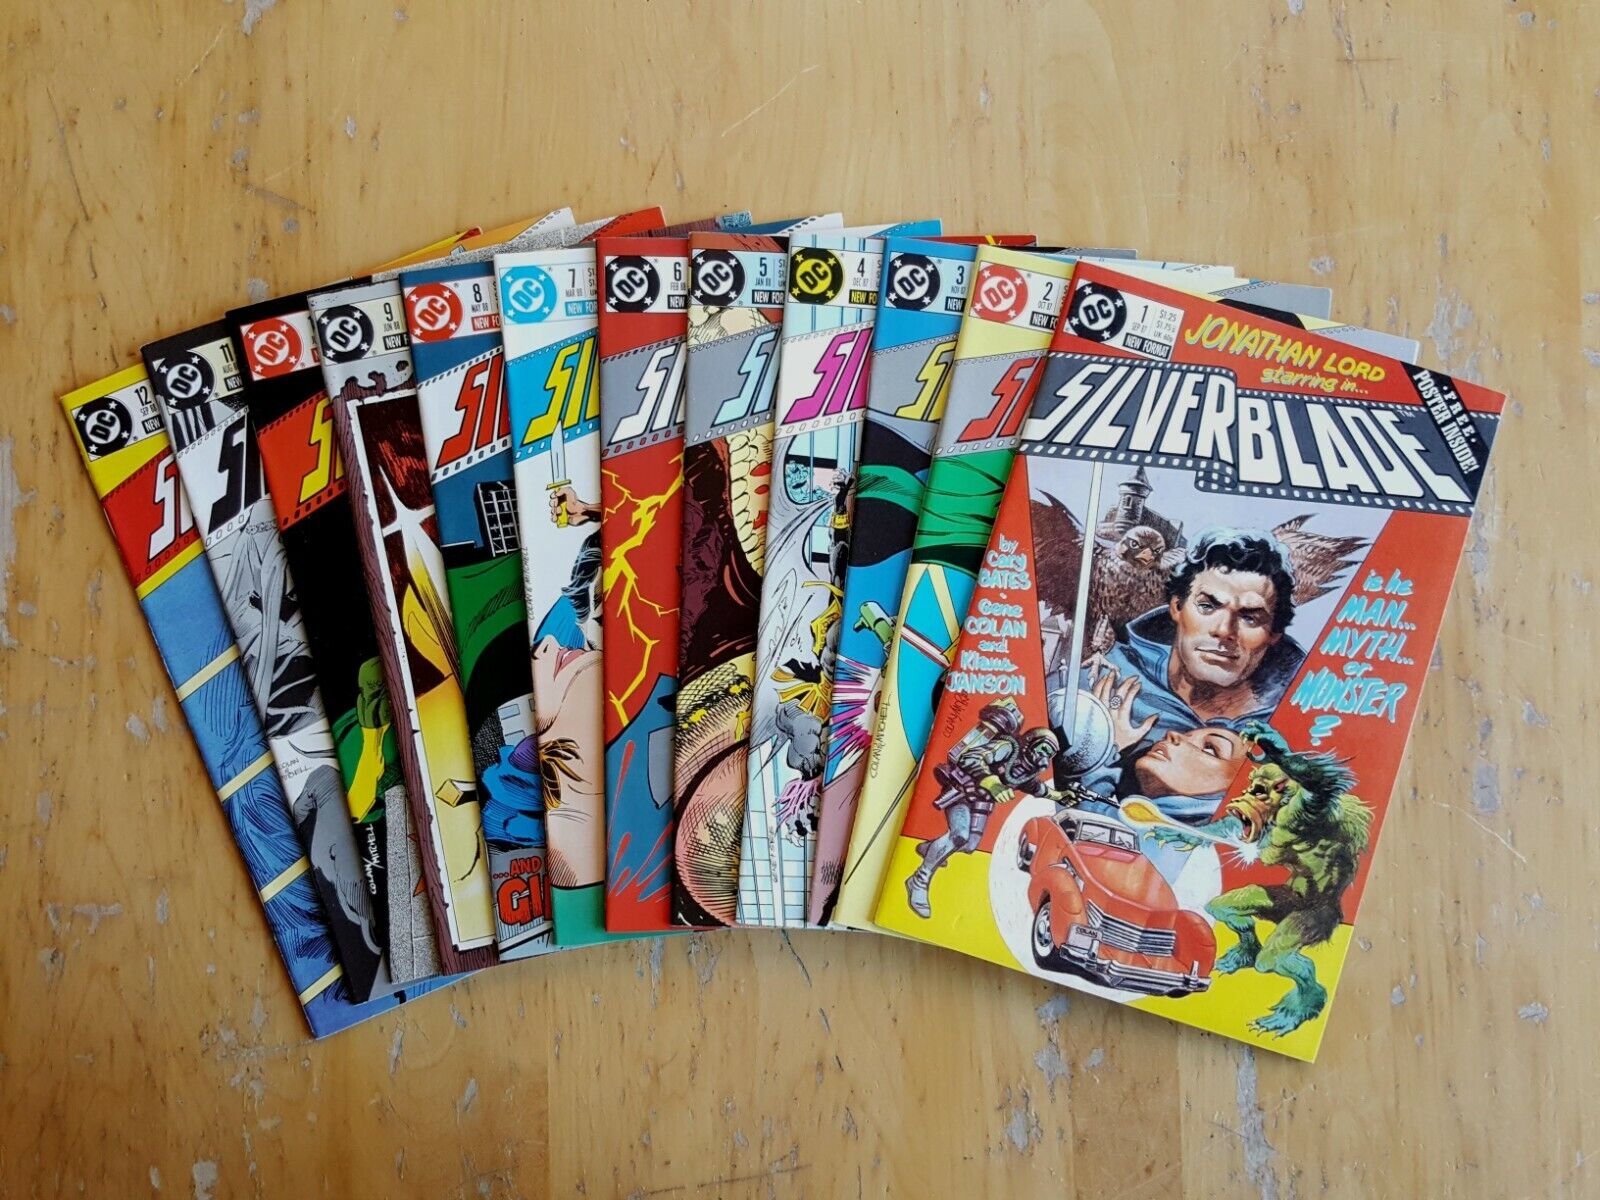 Silverblade #1-12. Full Run (1987-88, DC Comics) 9.4 Near Mint